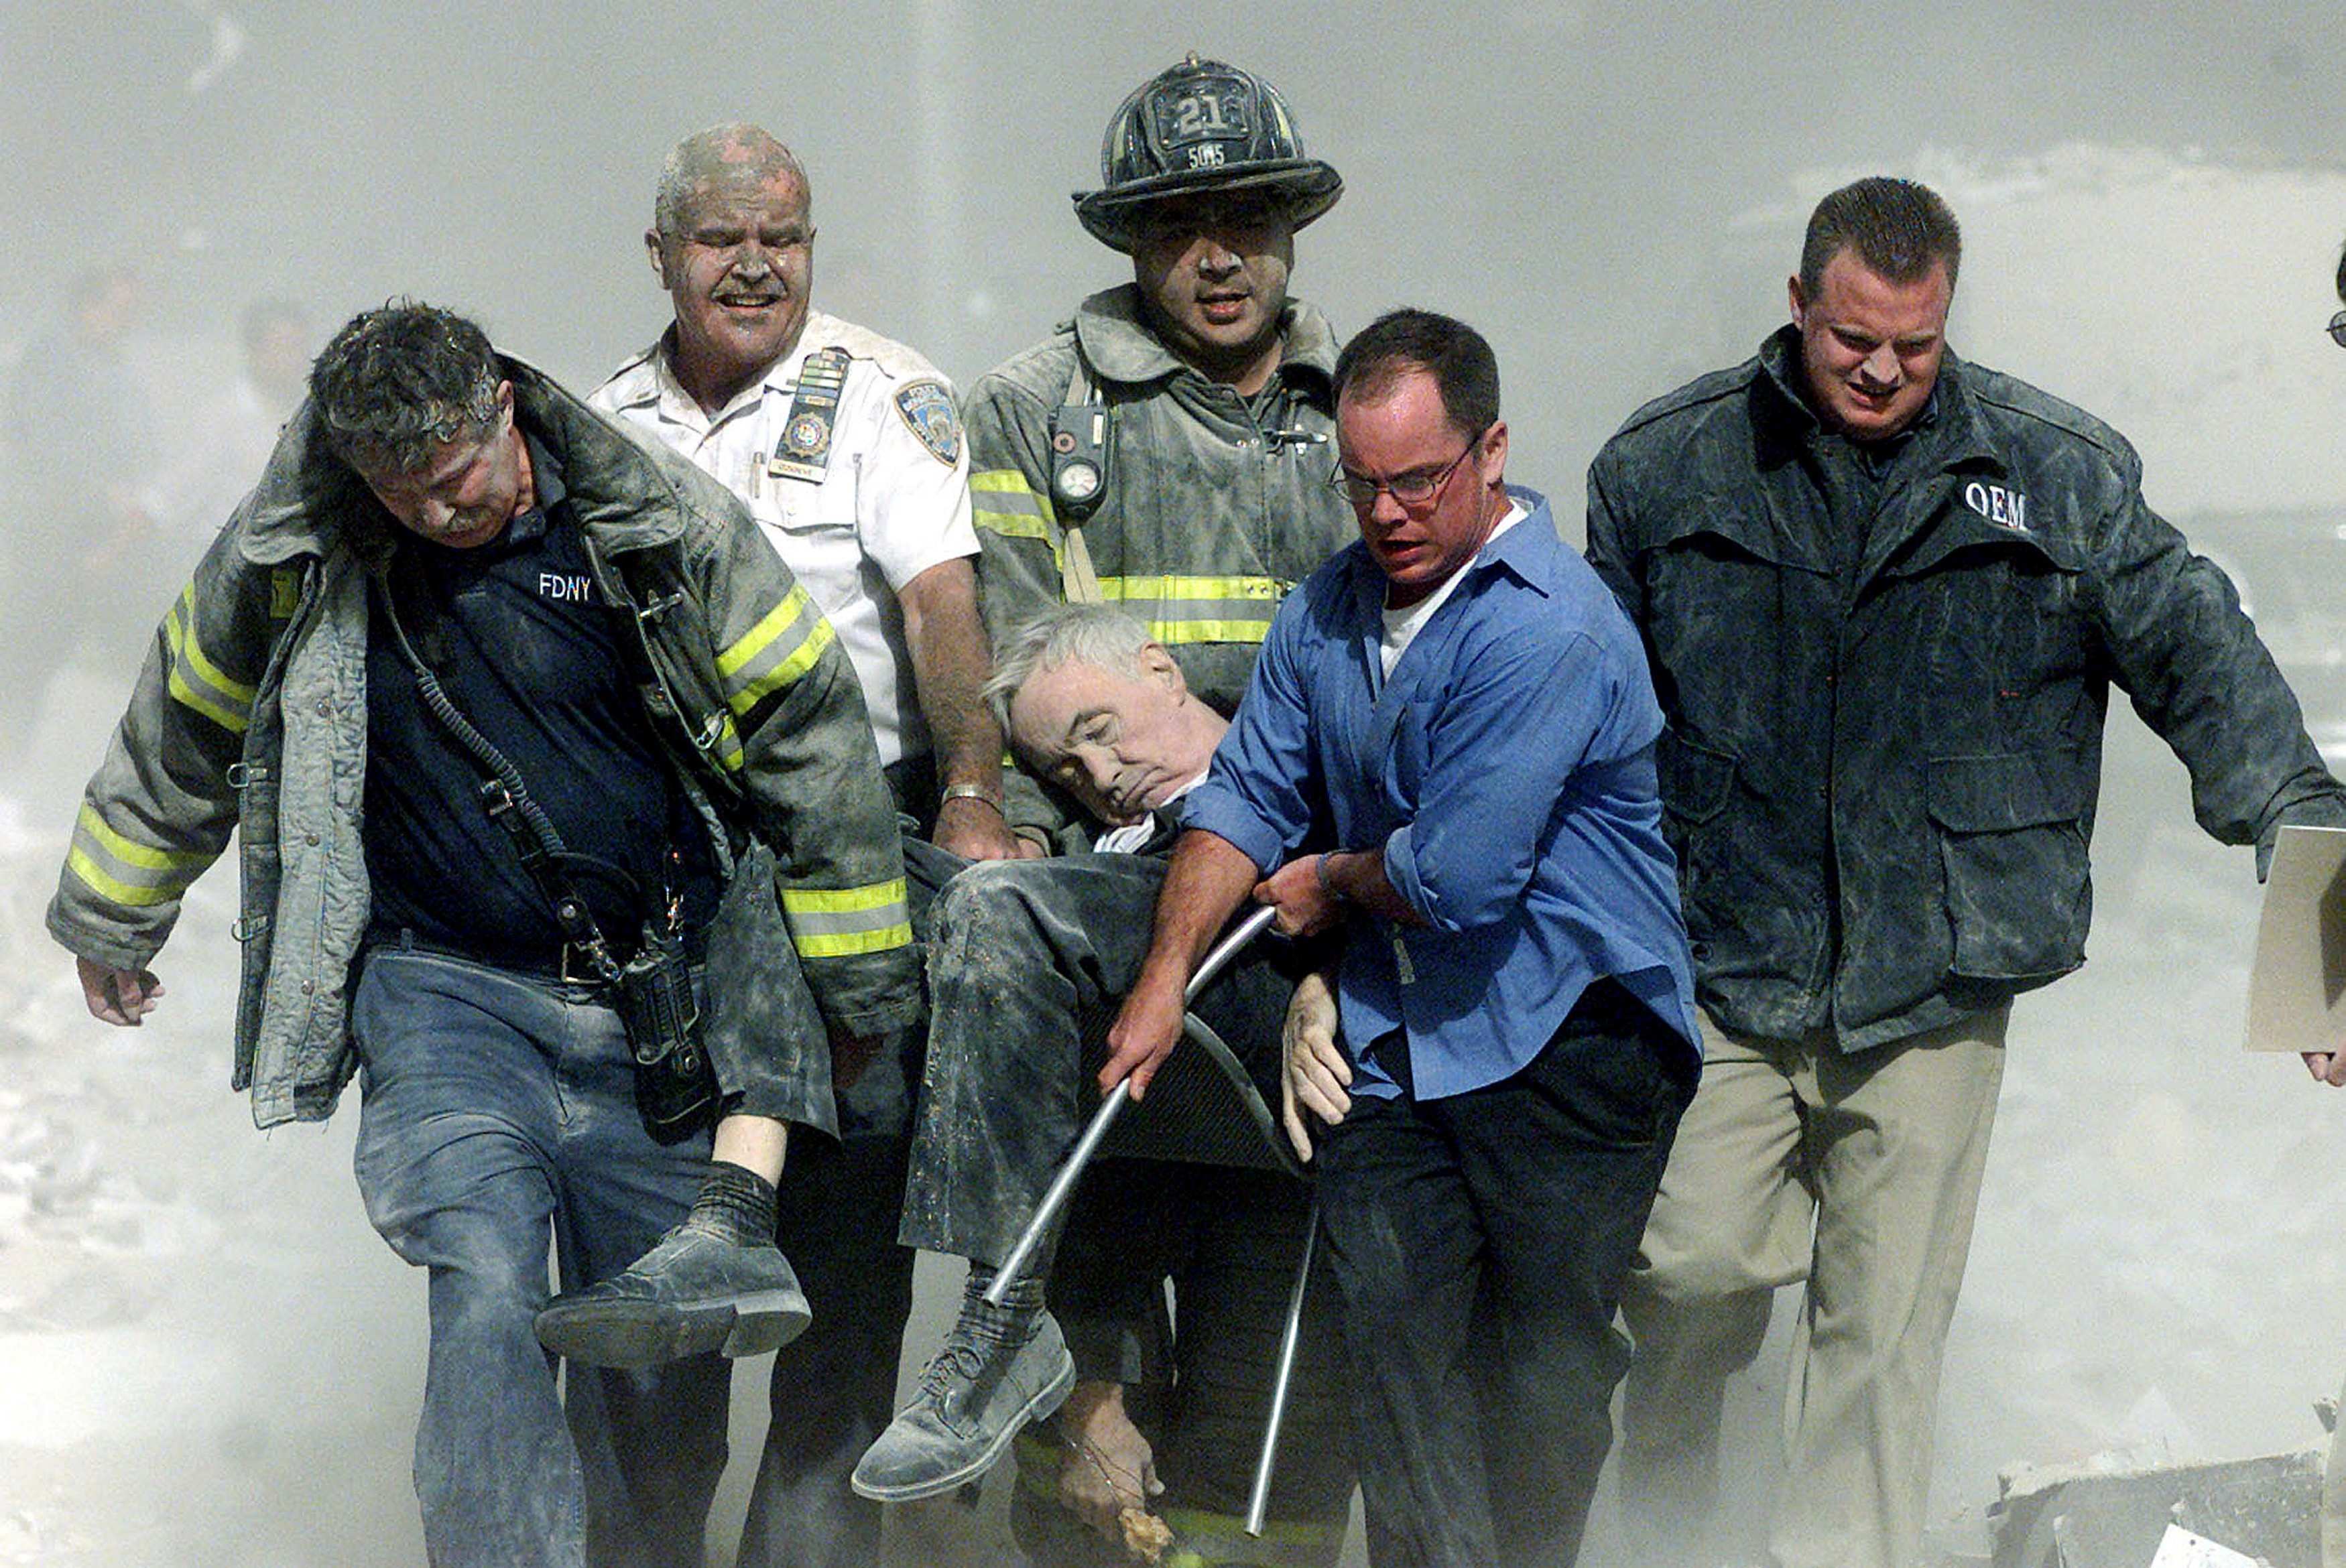 Сколько погибло в башнях. Спасатели 11 сентября 2001. Теракт в Нью-Йорке 11 сентября 2001. Башни Близнецы 11 сентября жертвы. Число погибших 11 сентября 2001.